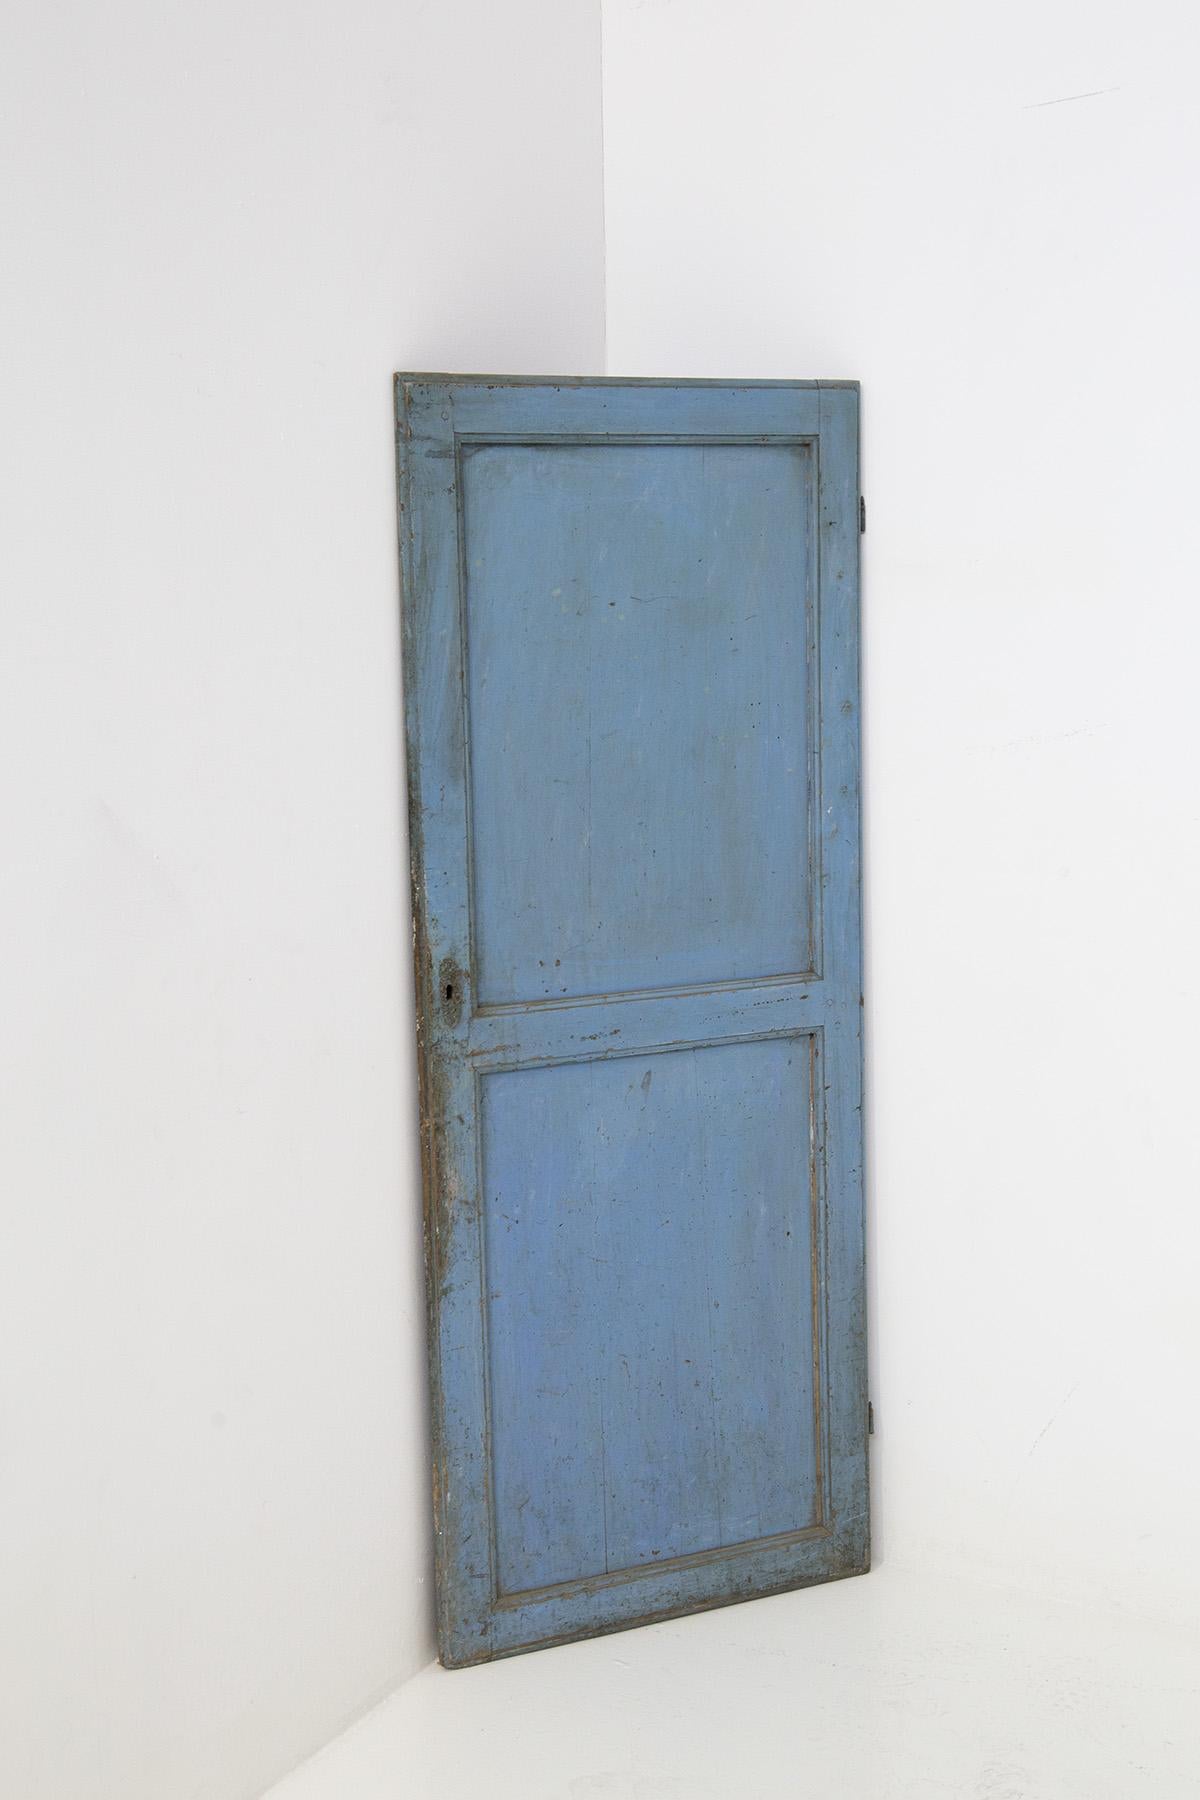 Porte décorative italienne de style fané du début des années 1920. La porte est en bois peint en bleu. La porte est manifestement ancienne et son vieillissement par les intempéries a créé un vieillissement décoratif parfait. On peut voir que le